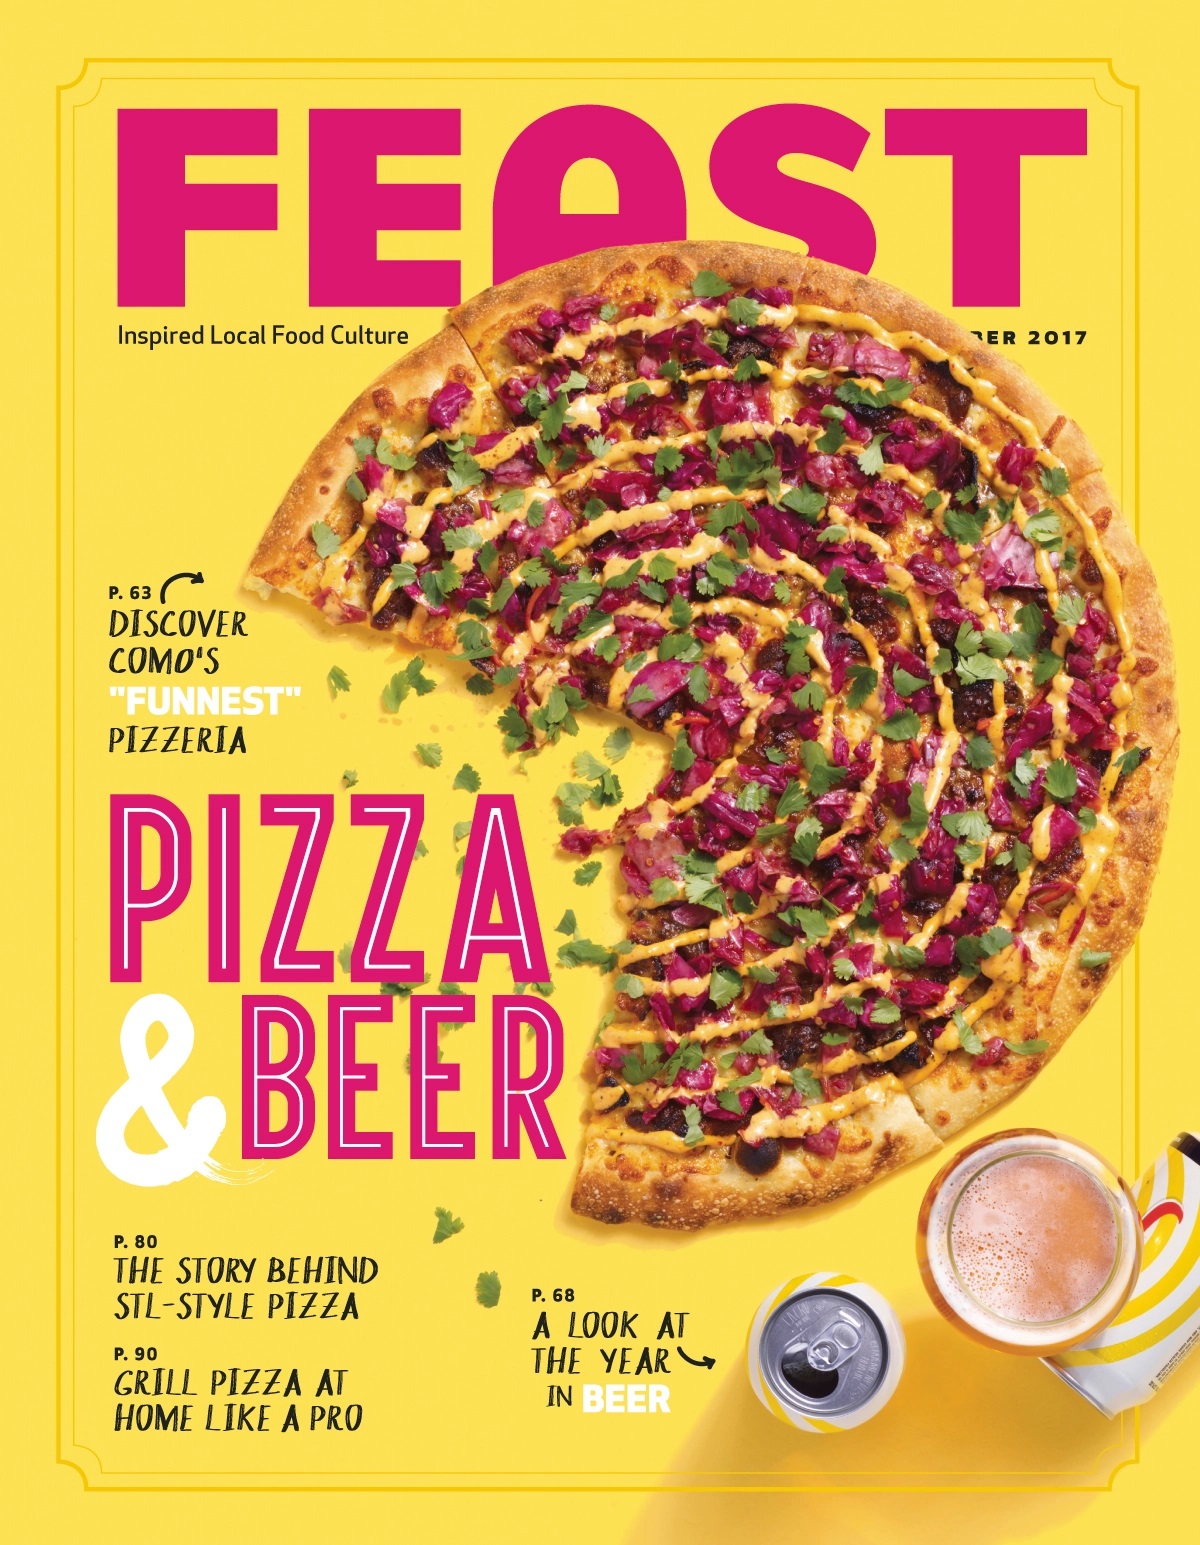 Feast - “Pizza & Beer,” October 2017